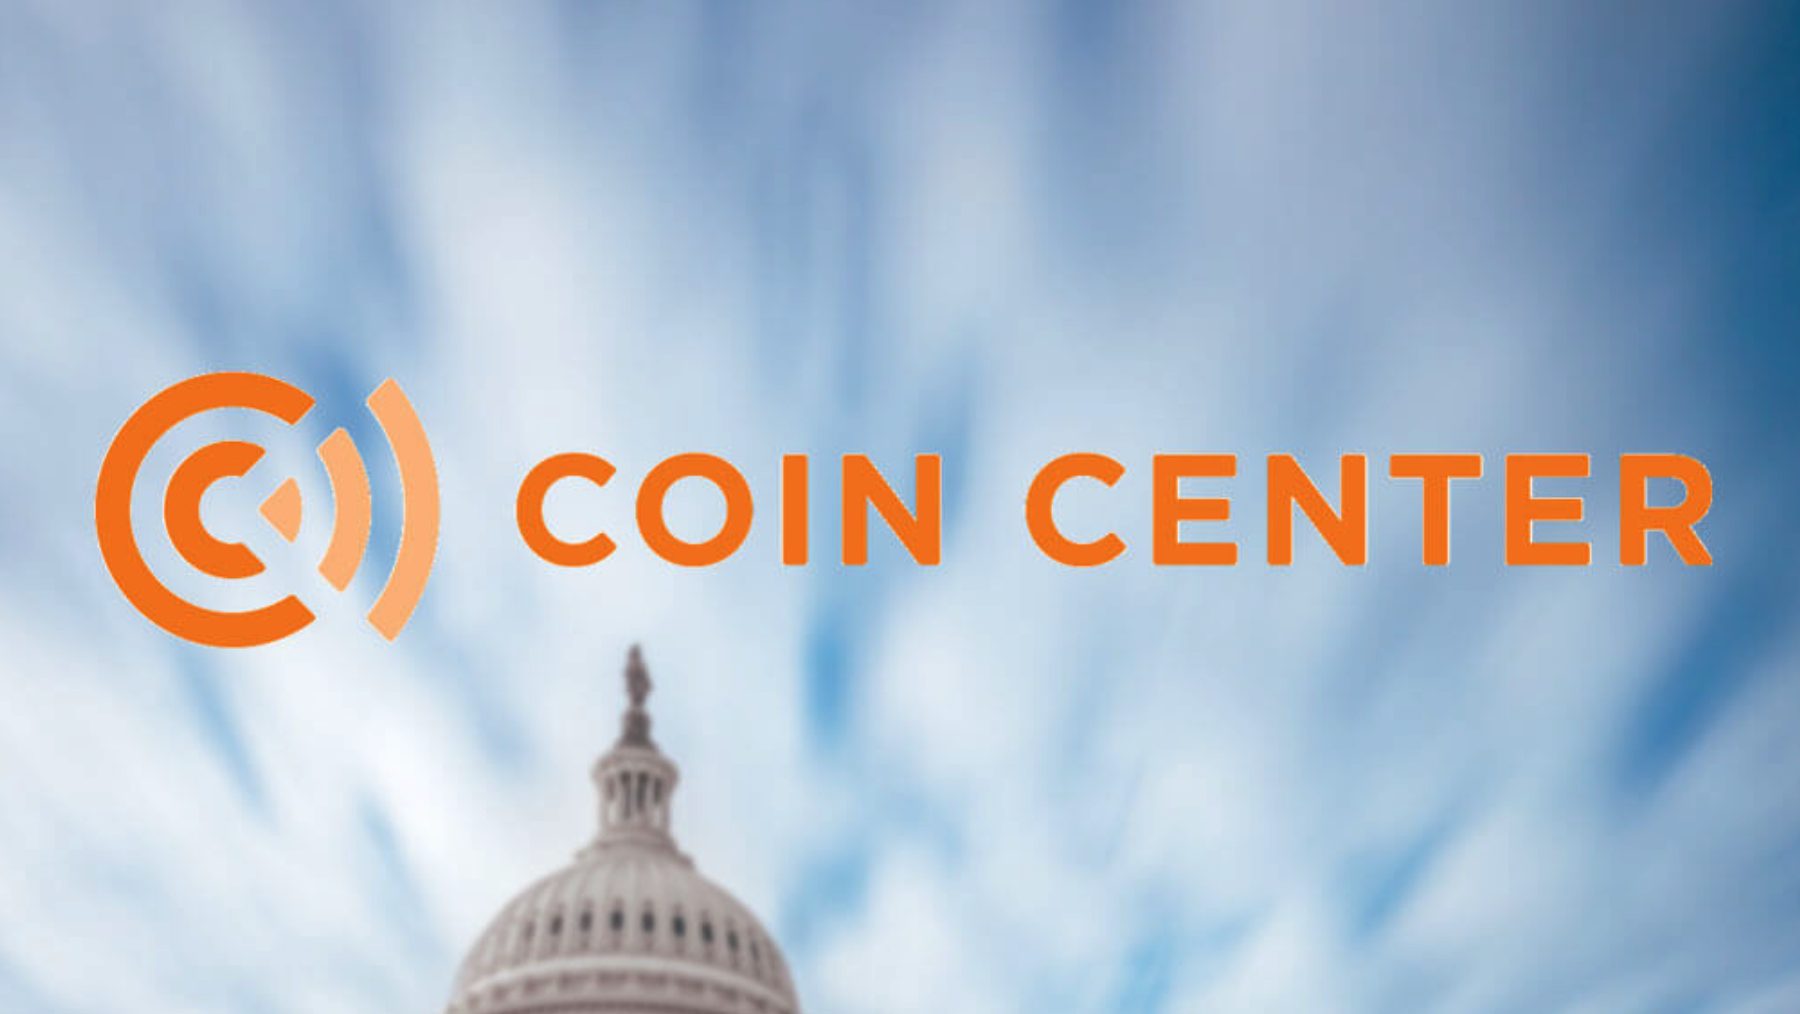 Coin Center оспорит запрет правительства США на работу Tornado Cash